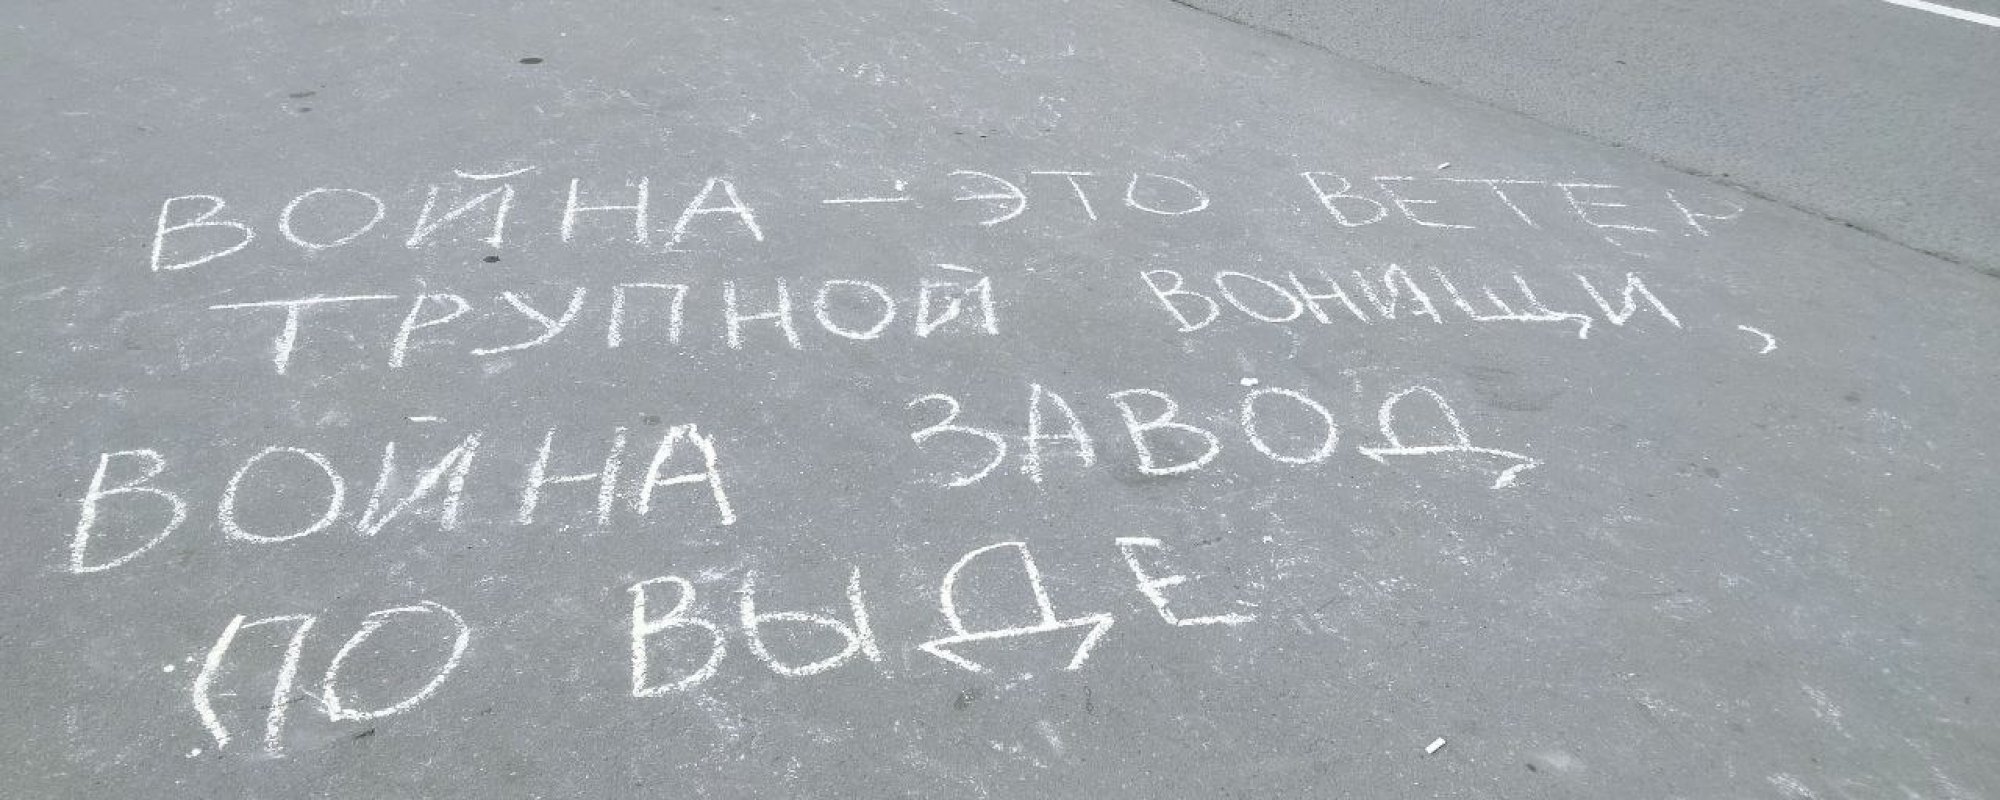 Напис на асфальті у Москві. Фото: ОВД-Инфо